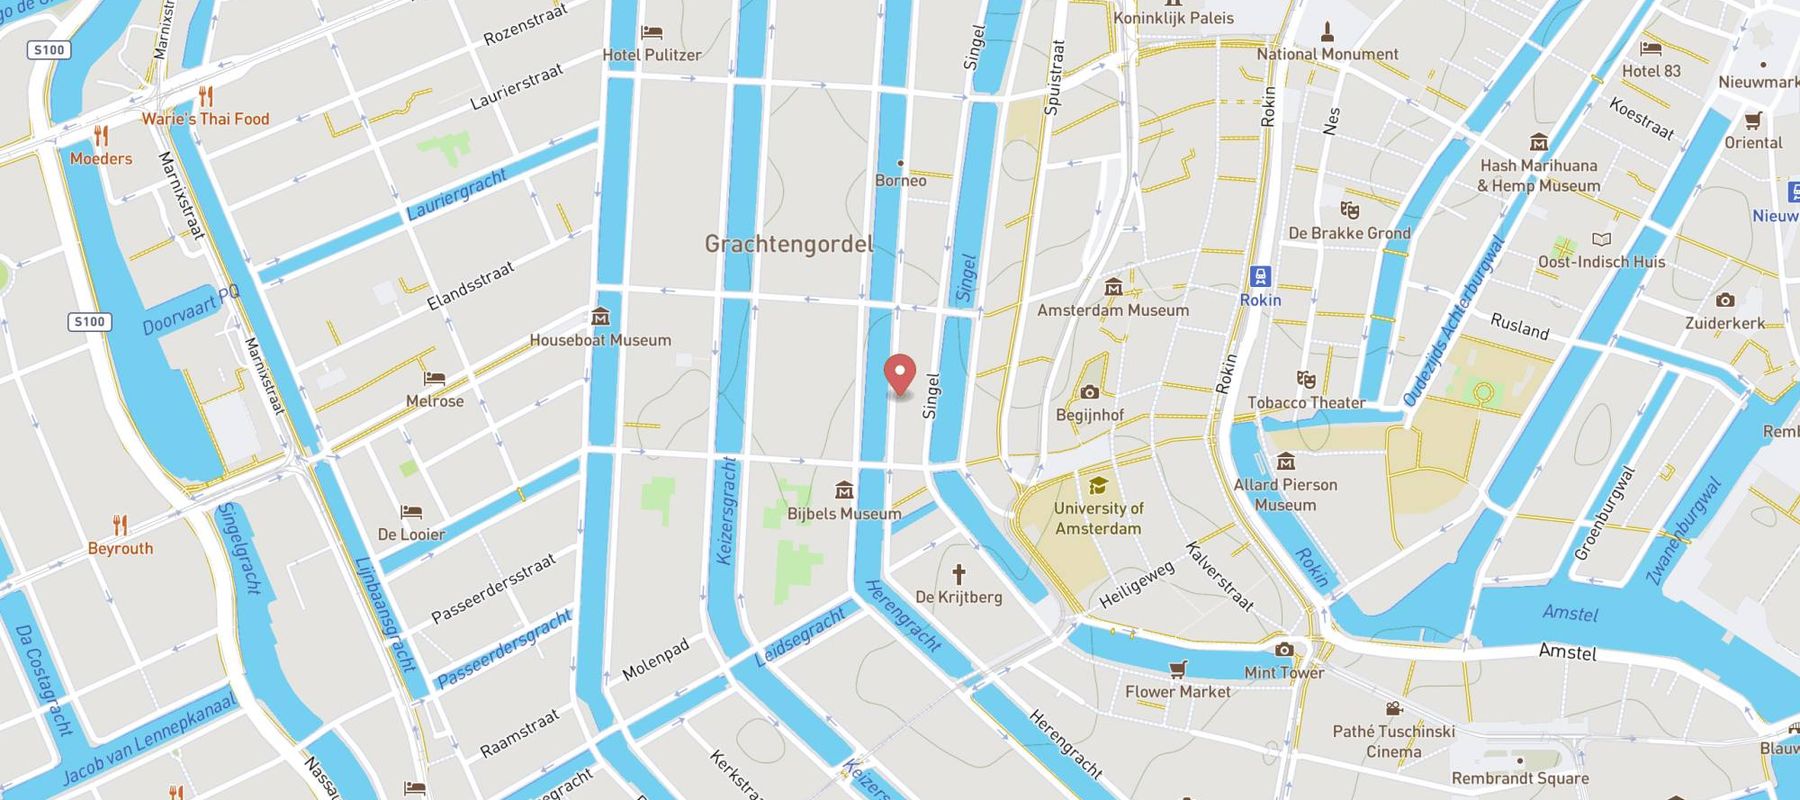 Ambassade Hotel - Amsterdam map